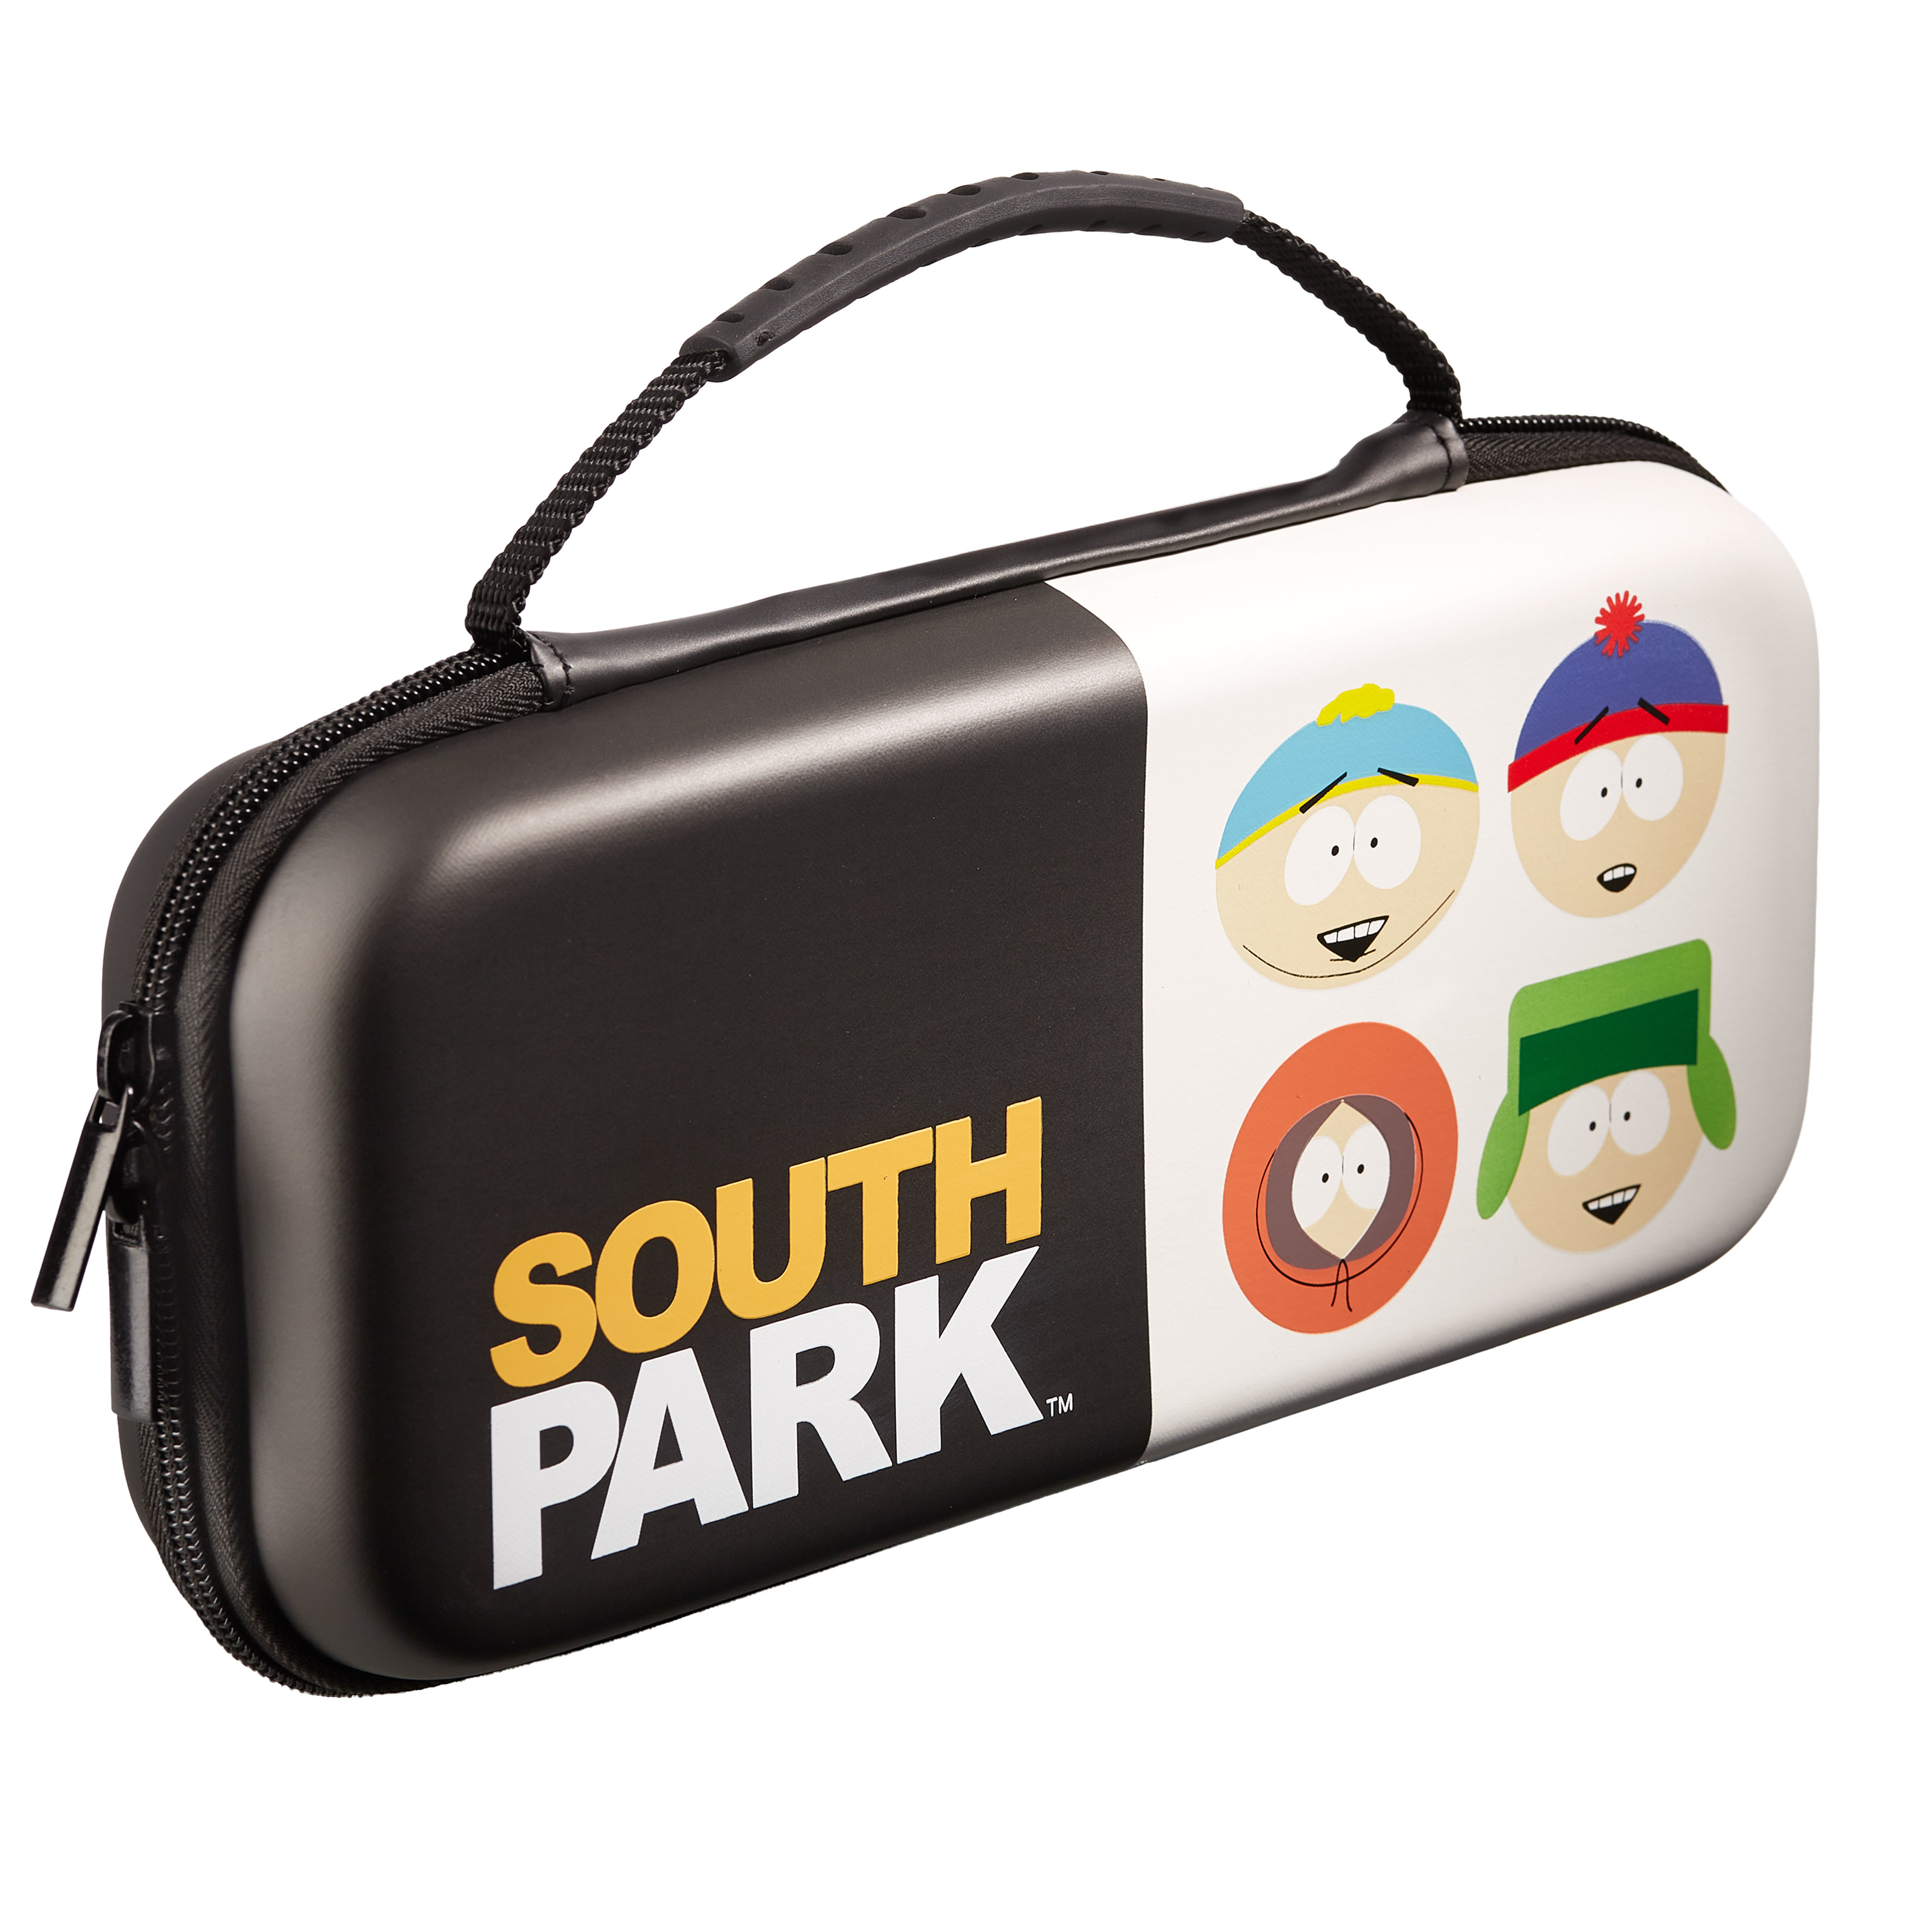 Comedy Central - Housse de transport South Park pour Nintendo Switch